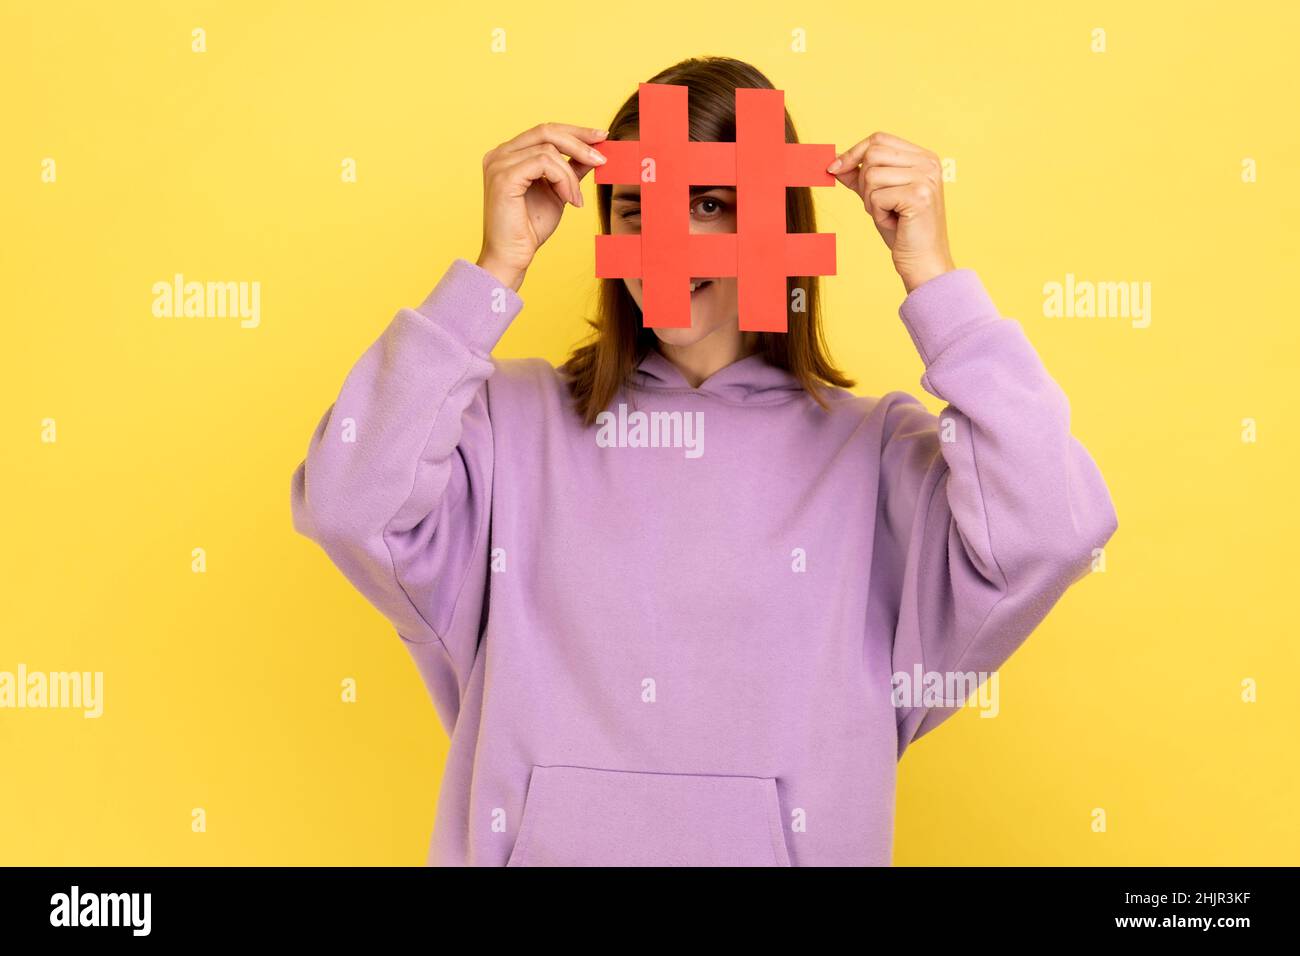 Porträt einer Frau, die Gesicht mit Social-Media-Hashtag-Symbol bedeckt, empfehlen, trendige Inhalte zu folgen, beliebten Blog, tragen lila Hoodie. Innenaufnahme des Studios isoliert auf gelbem Hintergrund. Stockfoto